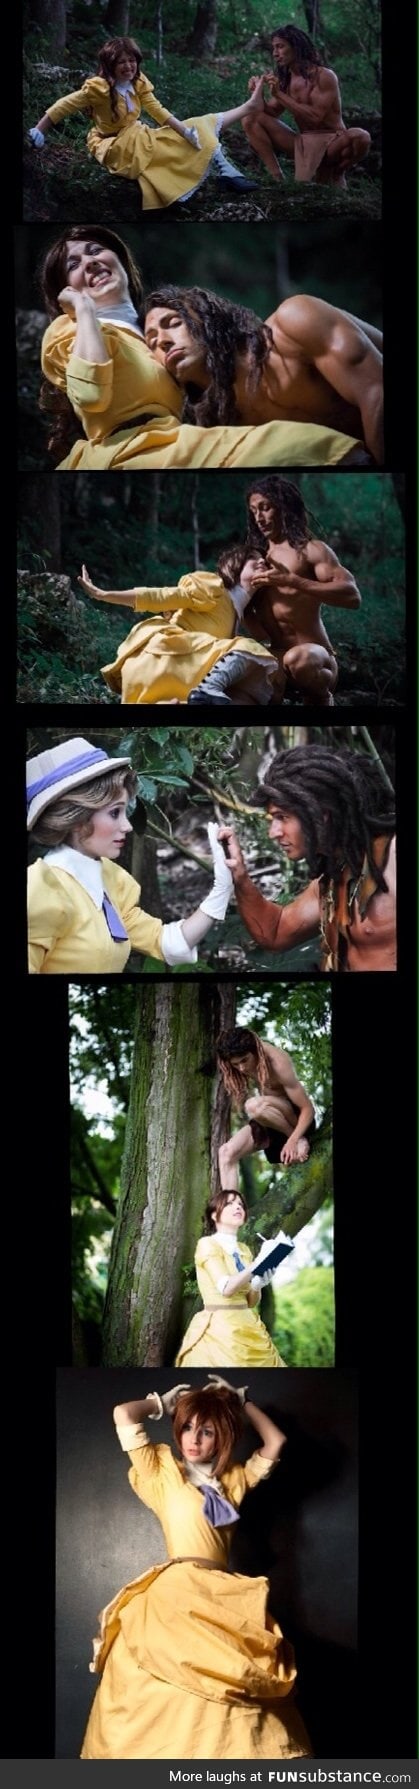 Tarzan & Jane cosplay